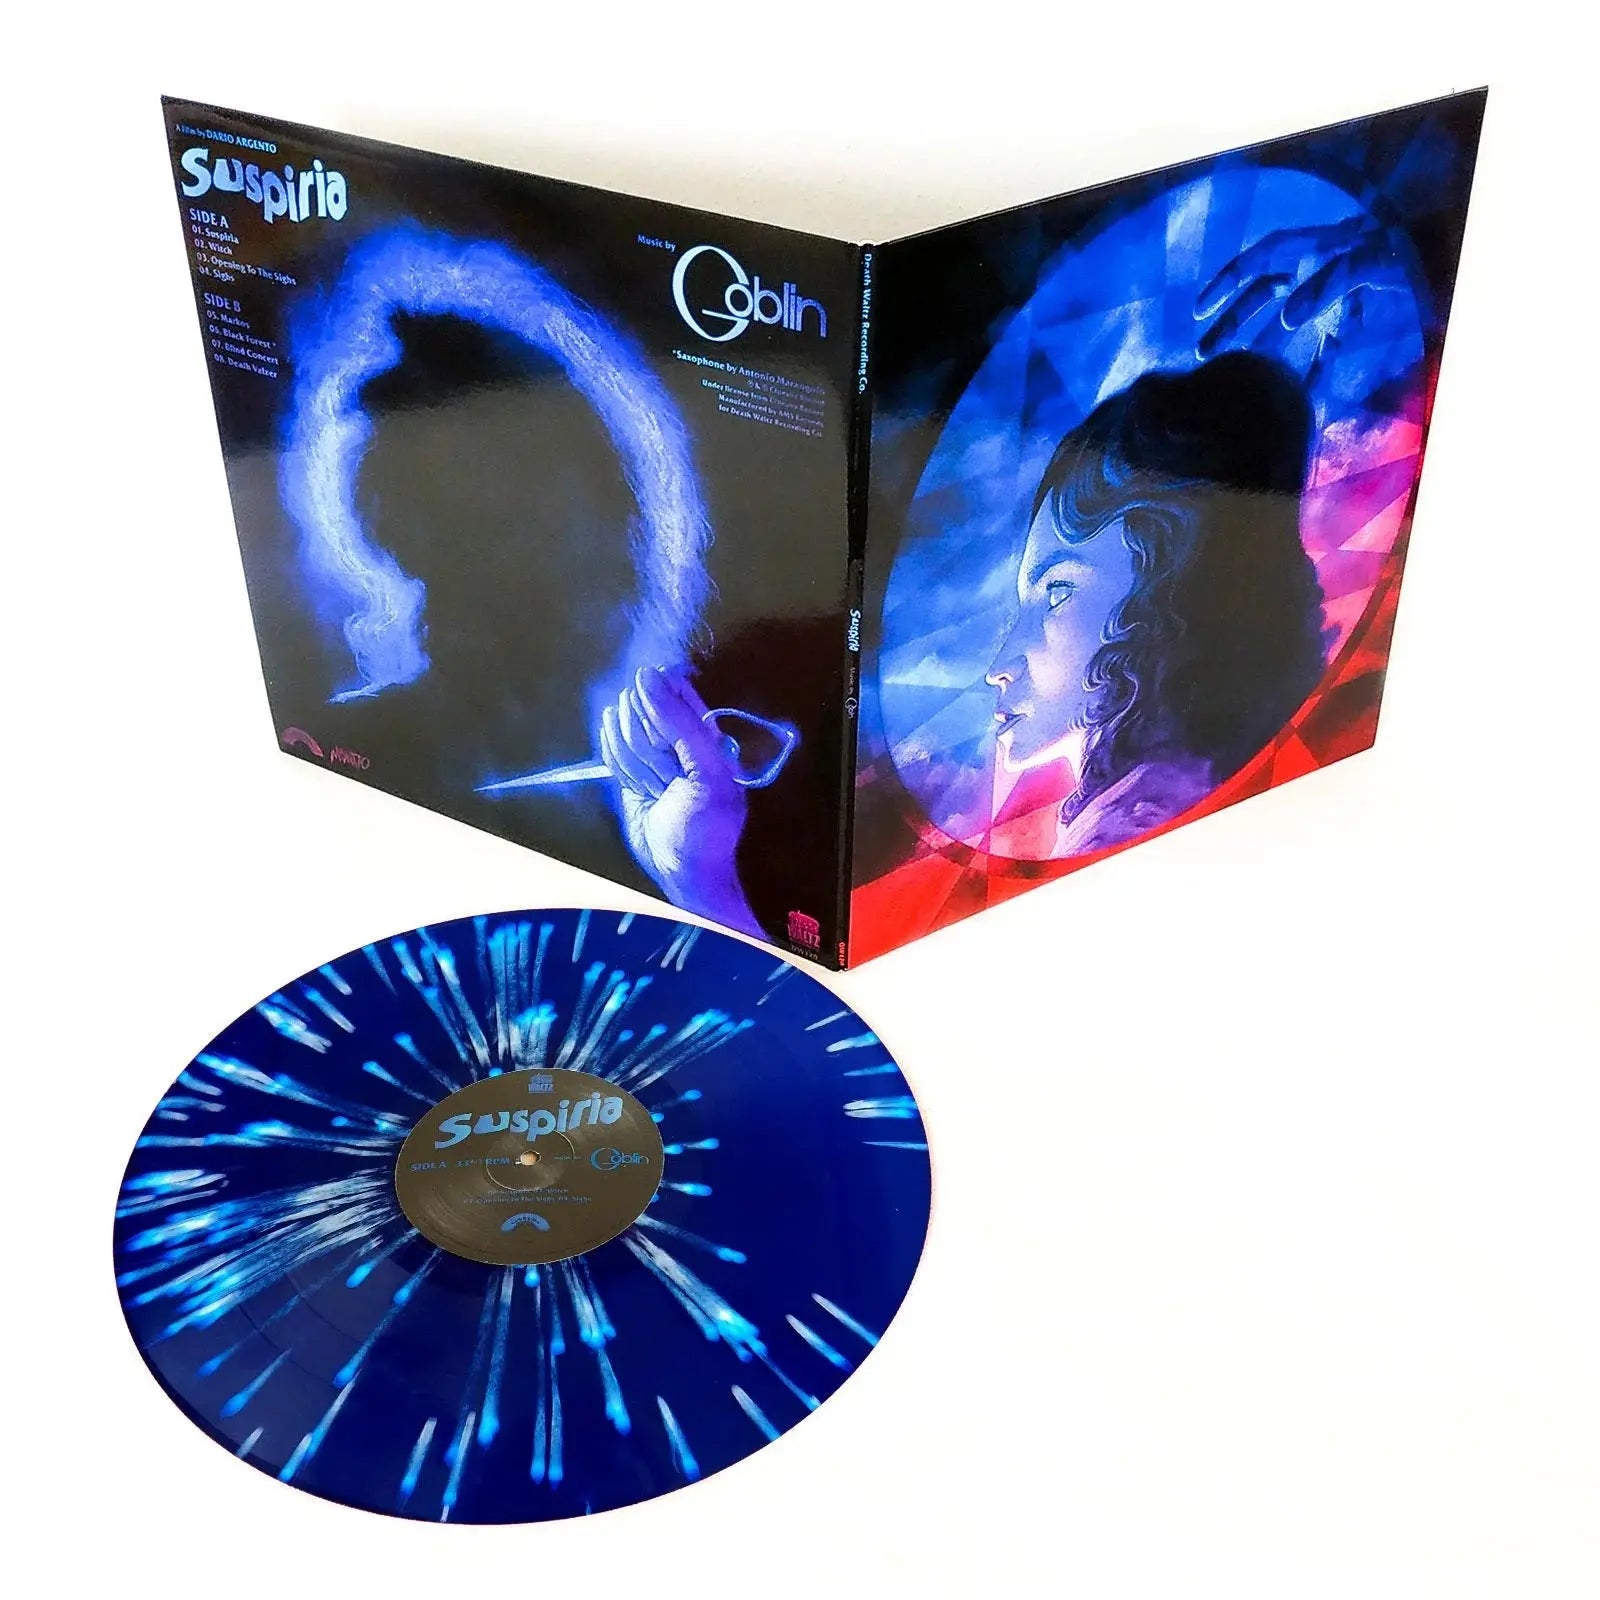 Goblin - Suspiria [Blue White Splatter Vinyl]